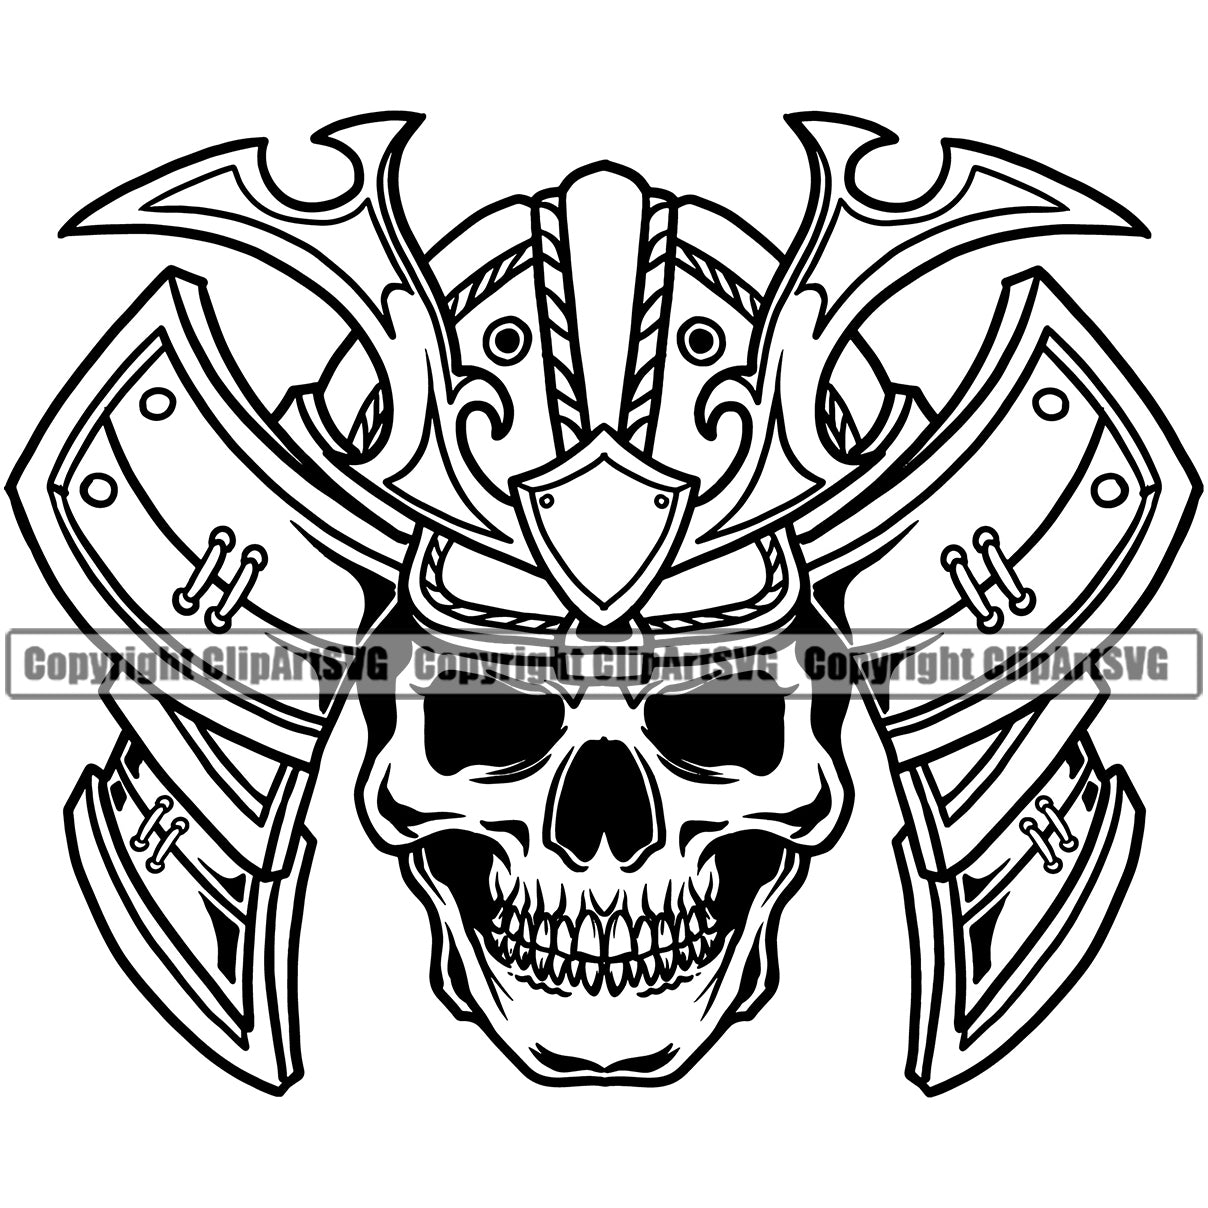 Samurai Warriai Skull Tattoo Japanese Ninja Mask Ilustração do Vetor -  Ilustração de crânio, bushido: 212004609